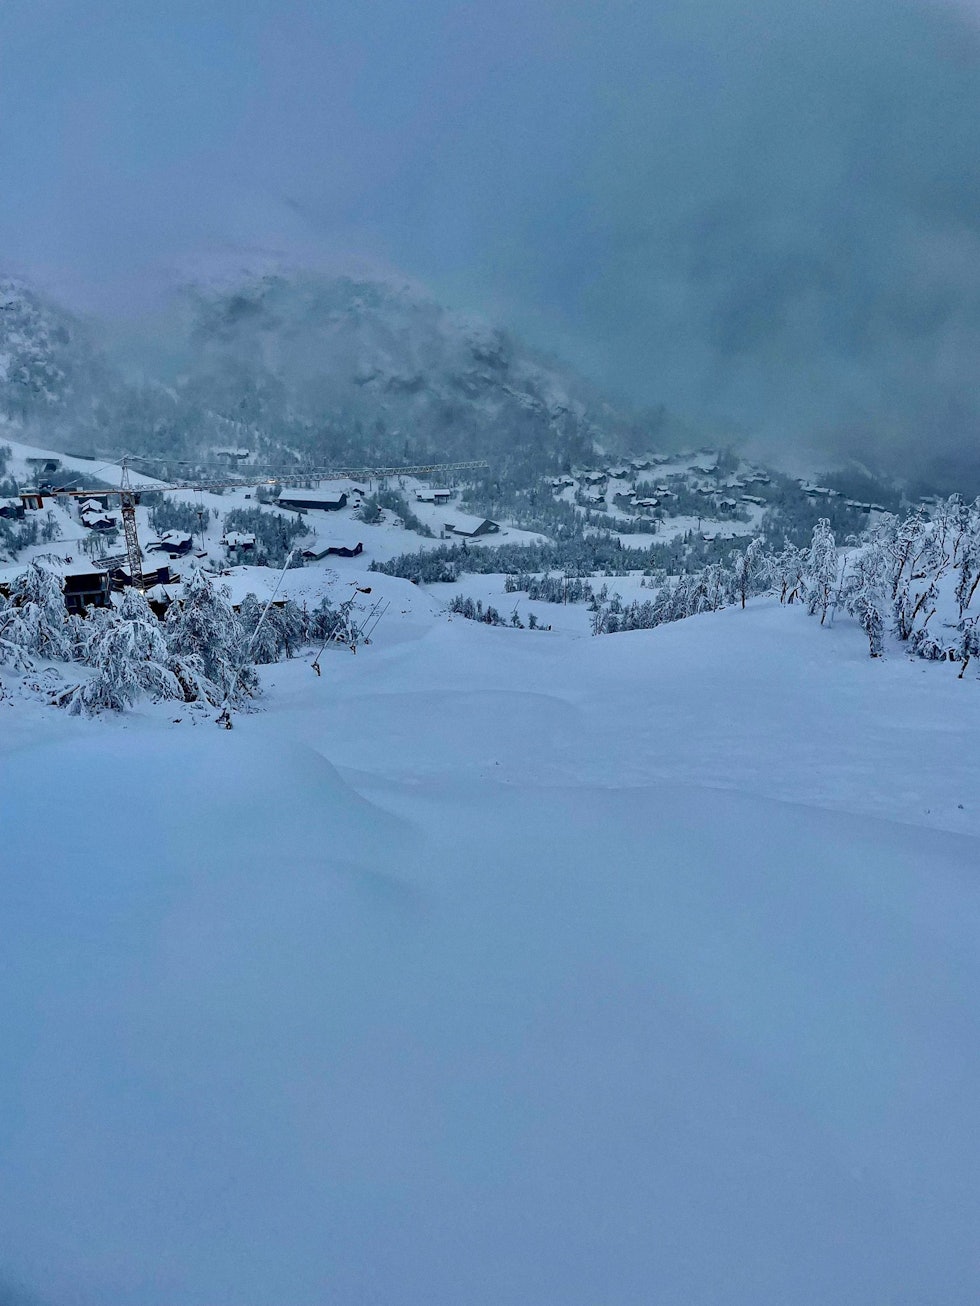 SEN NOVEMBER: – Flaks var det nok også, fordi vi fant den dypeste snøen høyt oppe i anlegget hvor de allerede hadde lagt en fin såle med kunstsnø, sier Pål Ødegaard om skidagen i Hemsedal. Foto: Pål Ødegaard